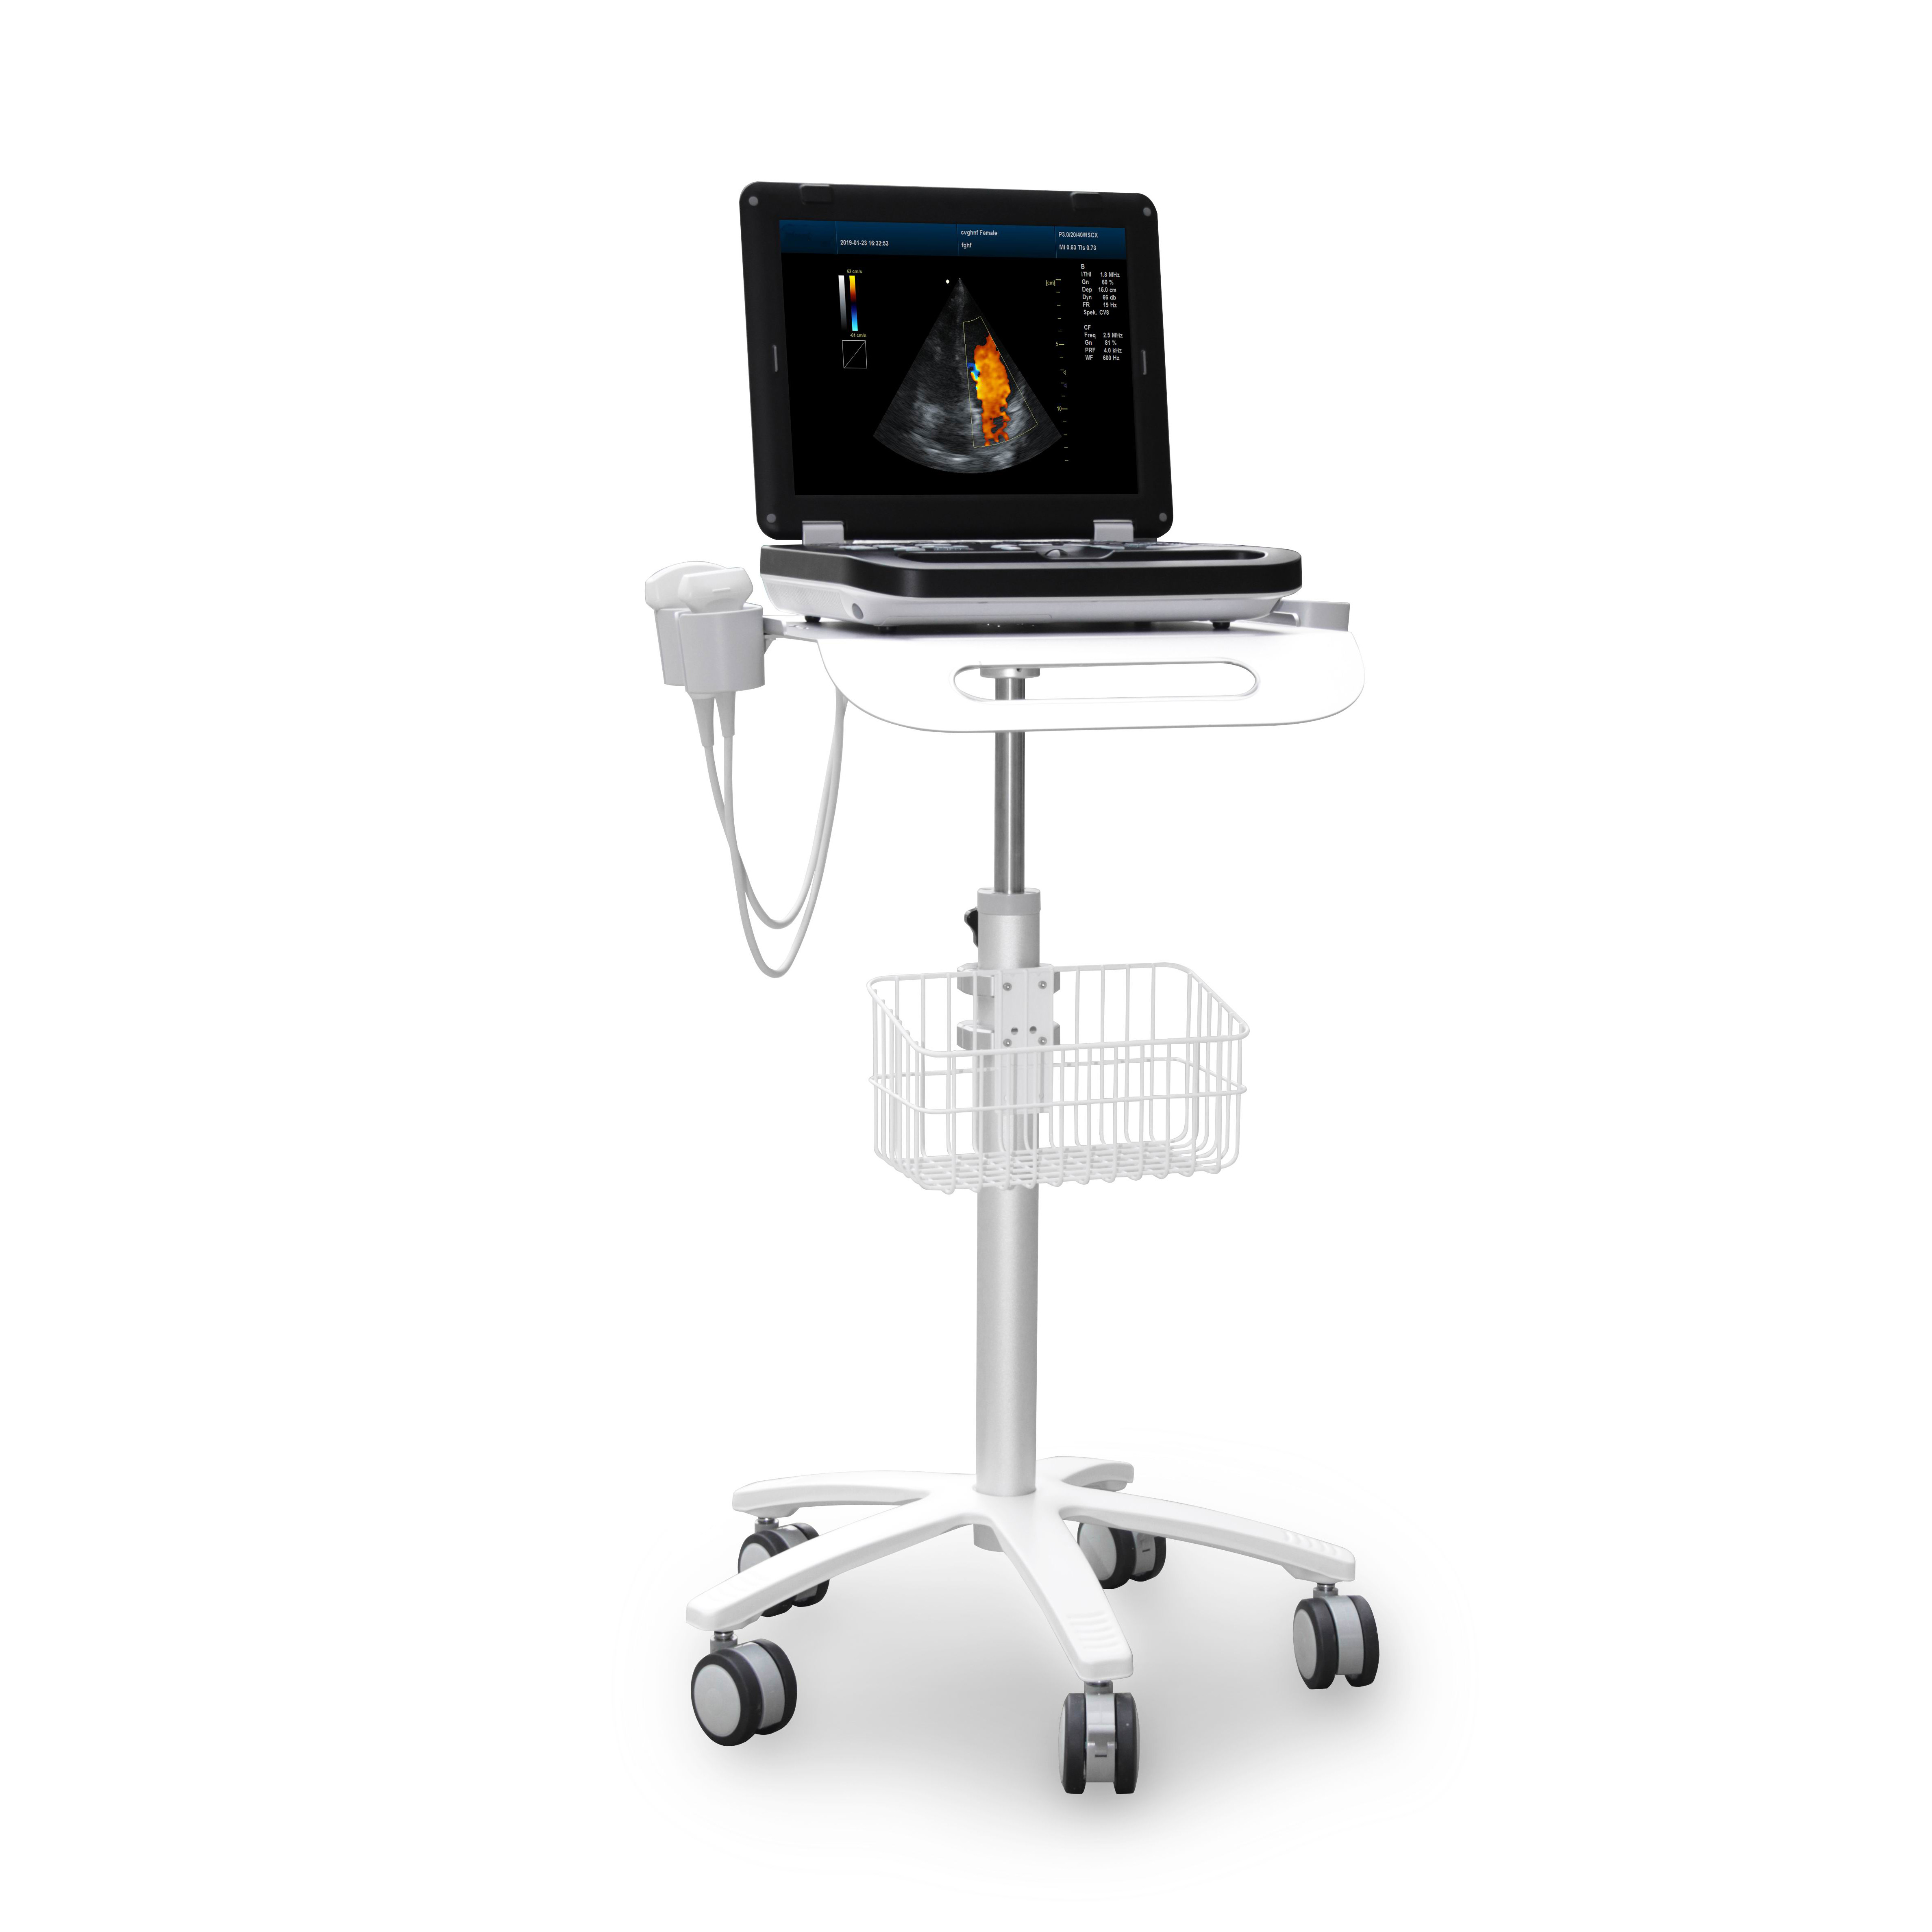 MS-C3000 Color Doppler Ultrasound Scanner·Large screen display